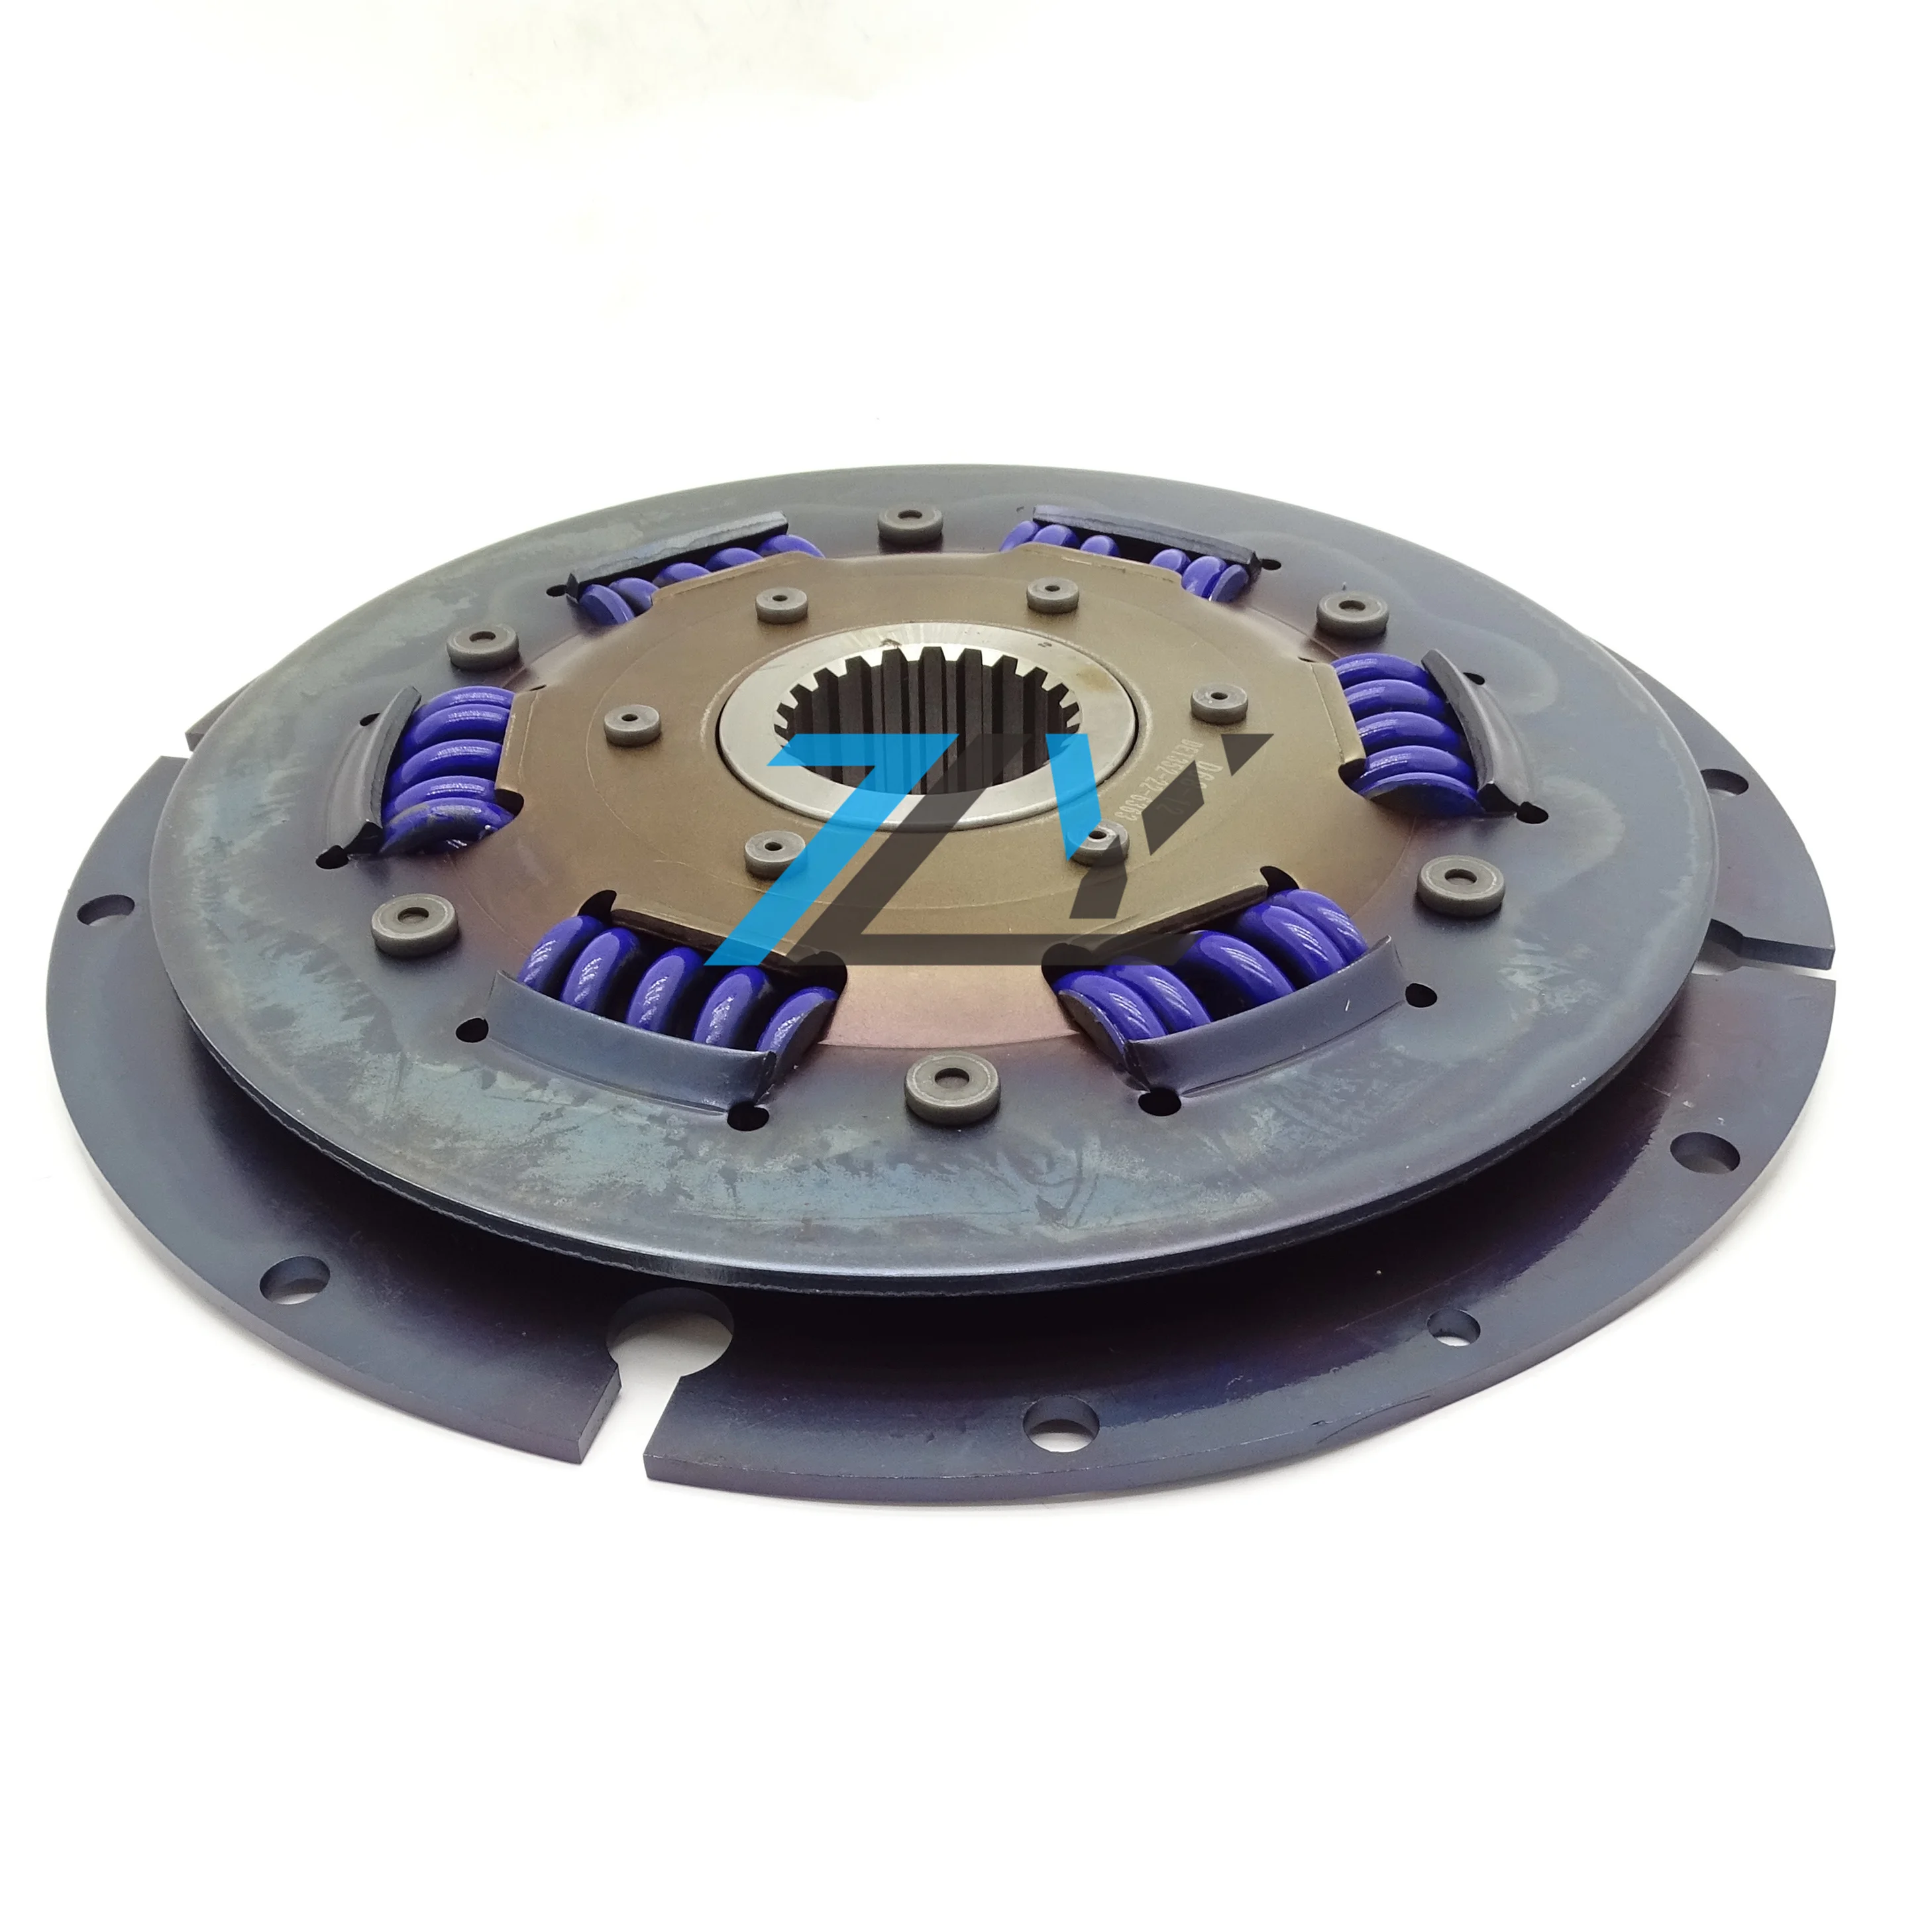 

Disc damper clutch Det 352-22-6363 for D68-12 Bulldozer spare parts 352226363